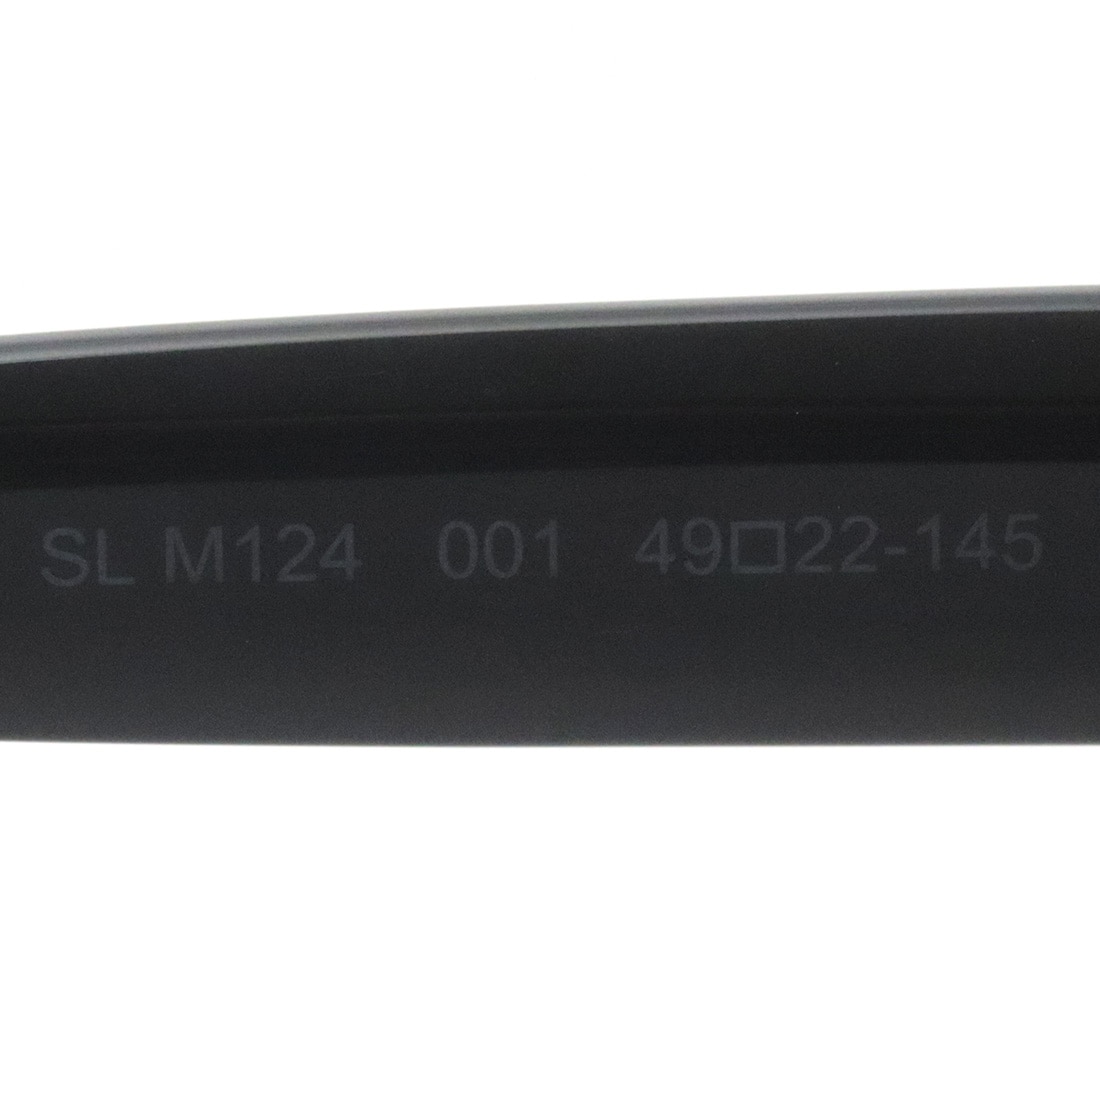 サンローラン サングラス SAINT LAURENT SLM124 001(49mm ブラック